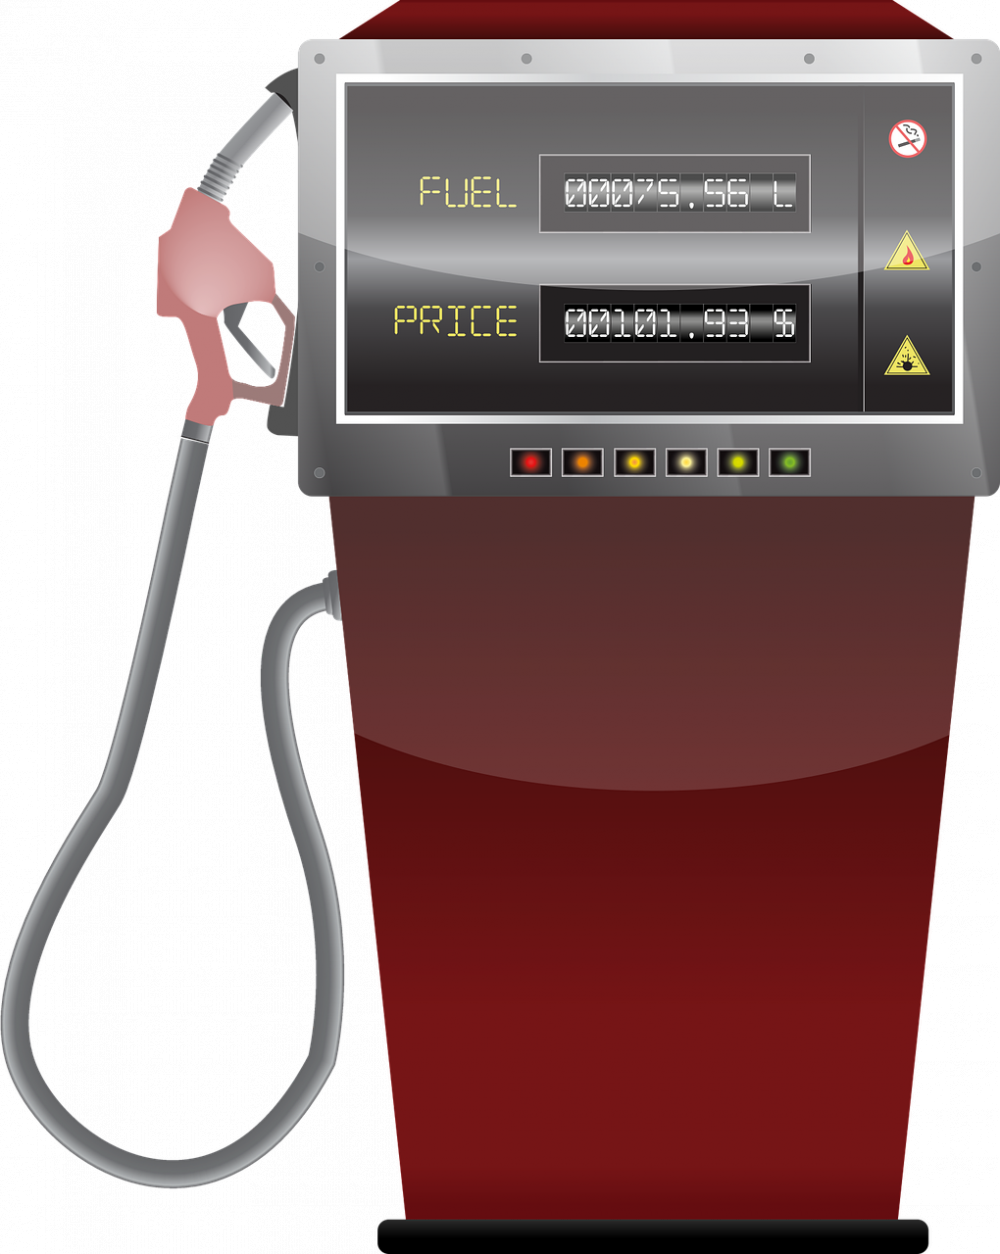 Varför är diesel dyrare än bensin